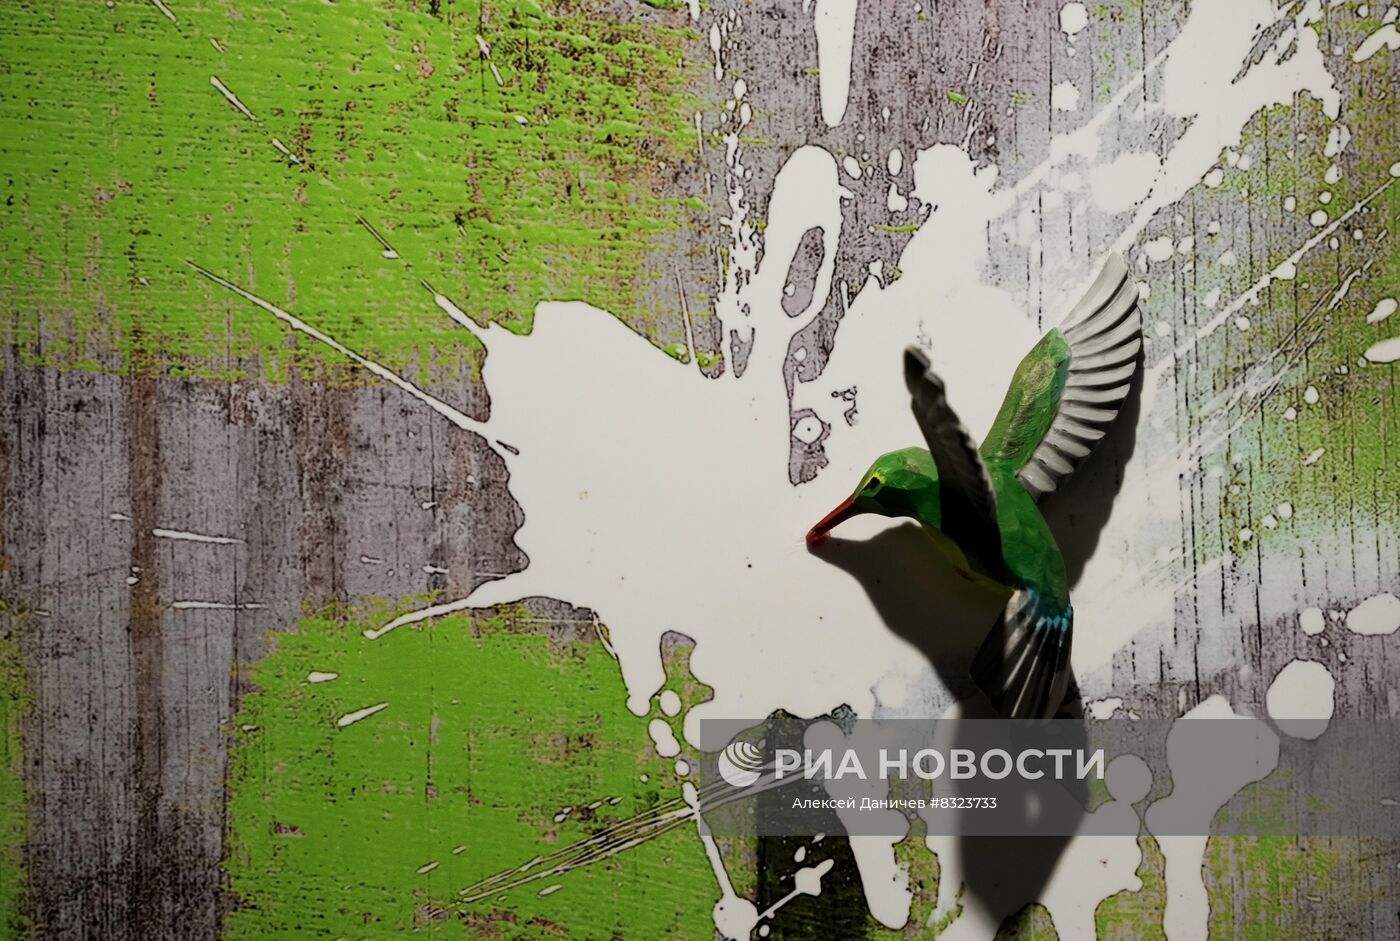 Открытие инсталляции по мотивам творчества Бэнкси в Санкт-Петербурге